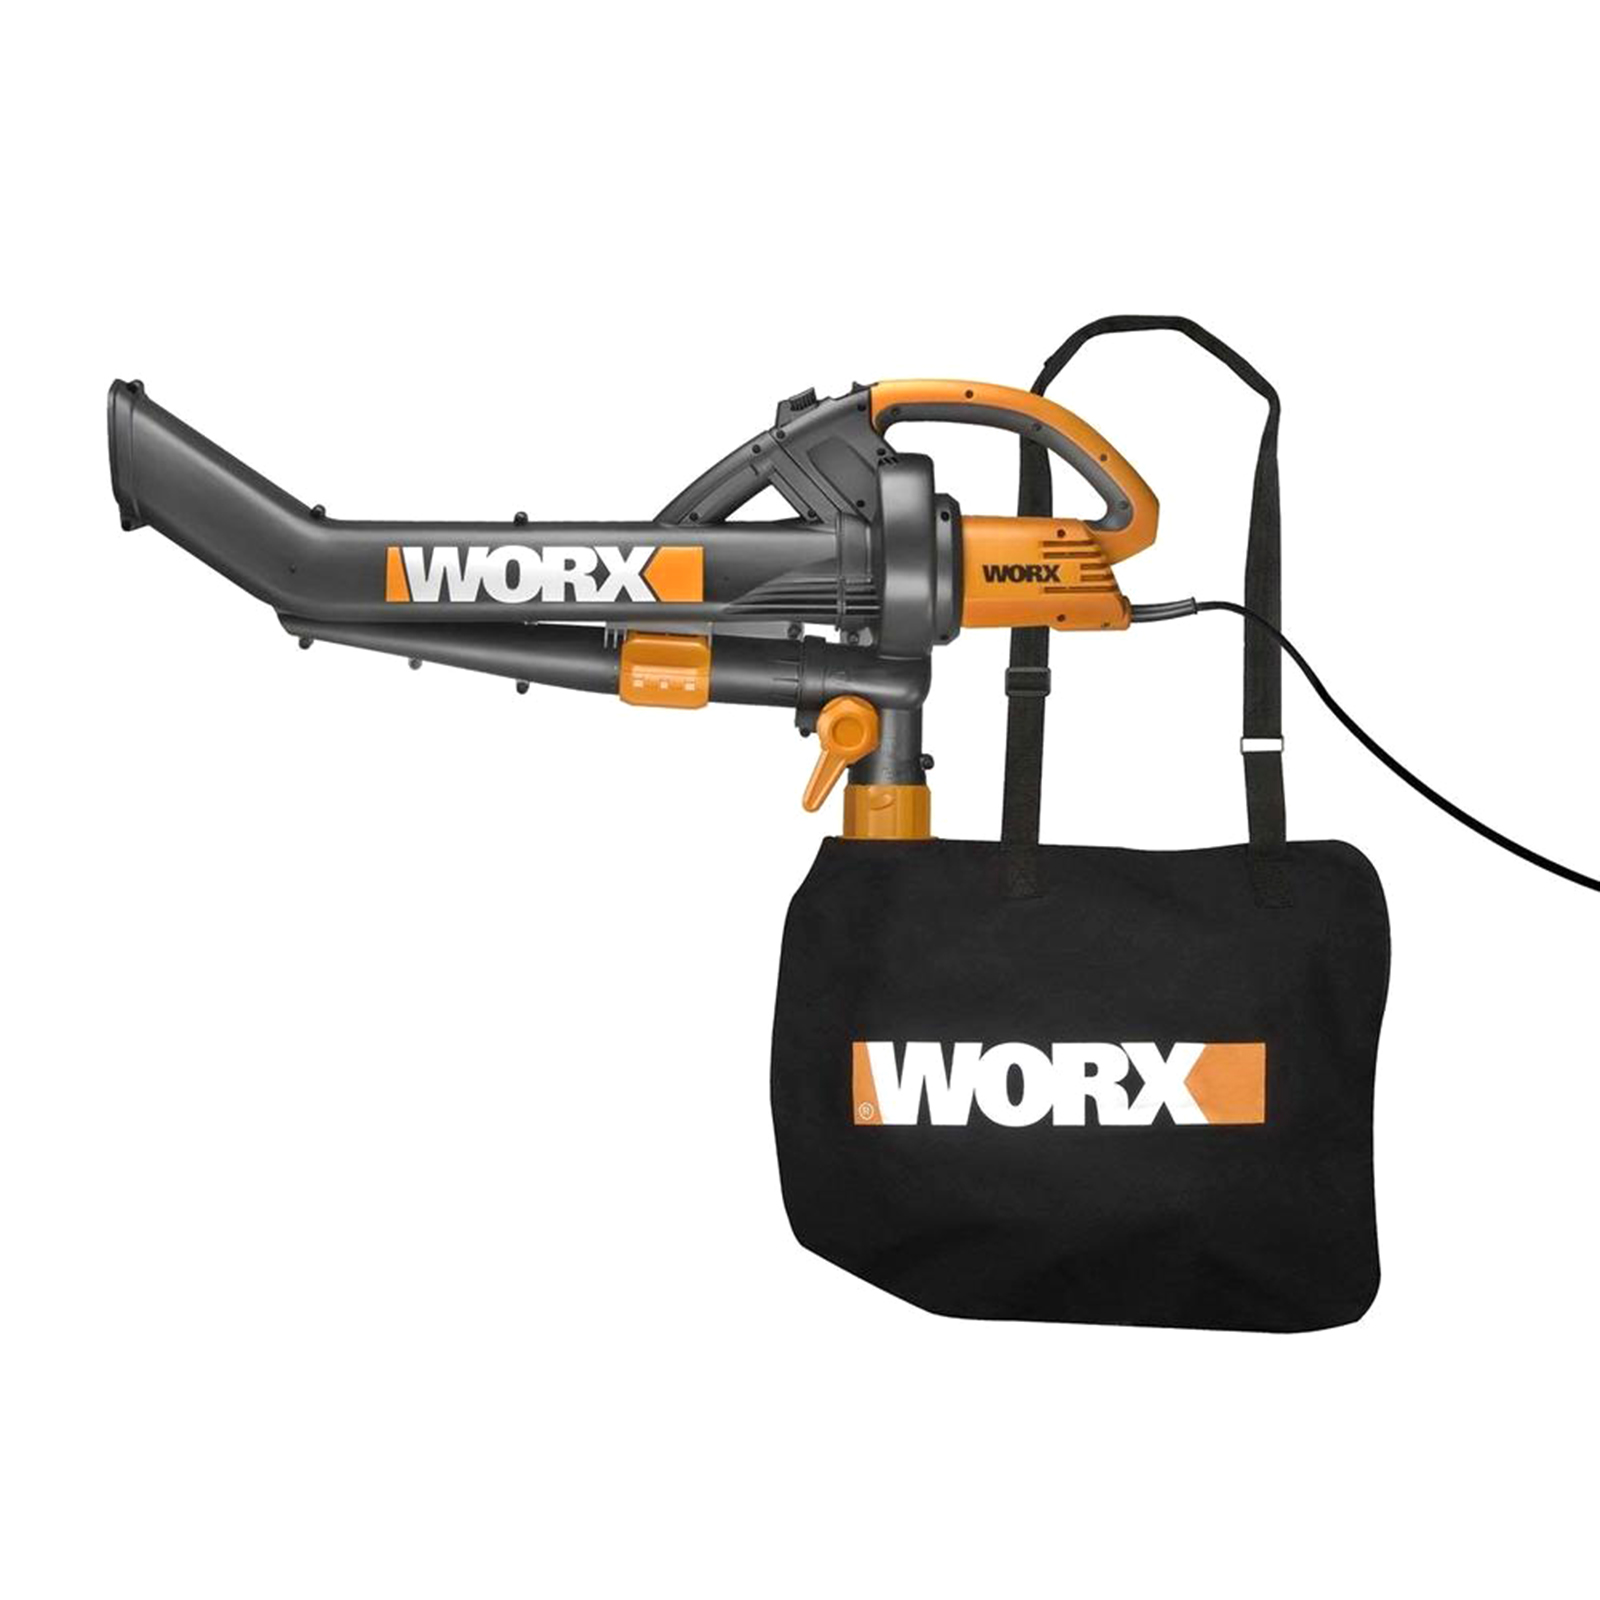 Worx TRUE13513 Trivac Wg500 12A All-in-One Electric Blower Mulcher Vacuum